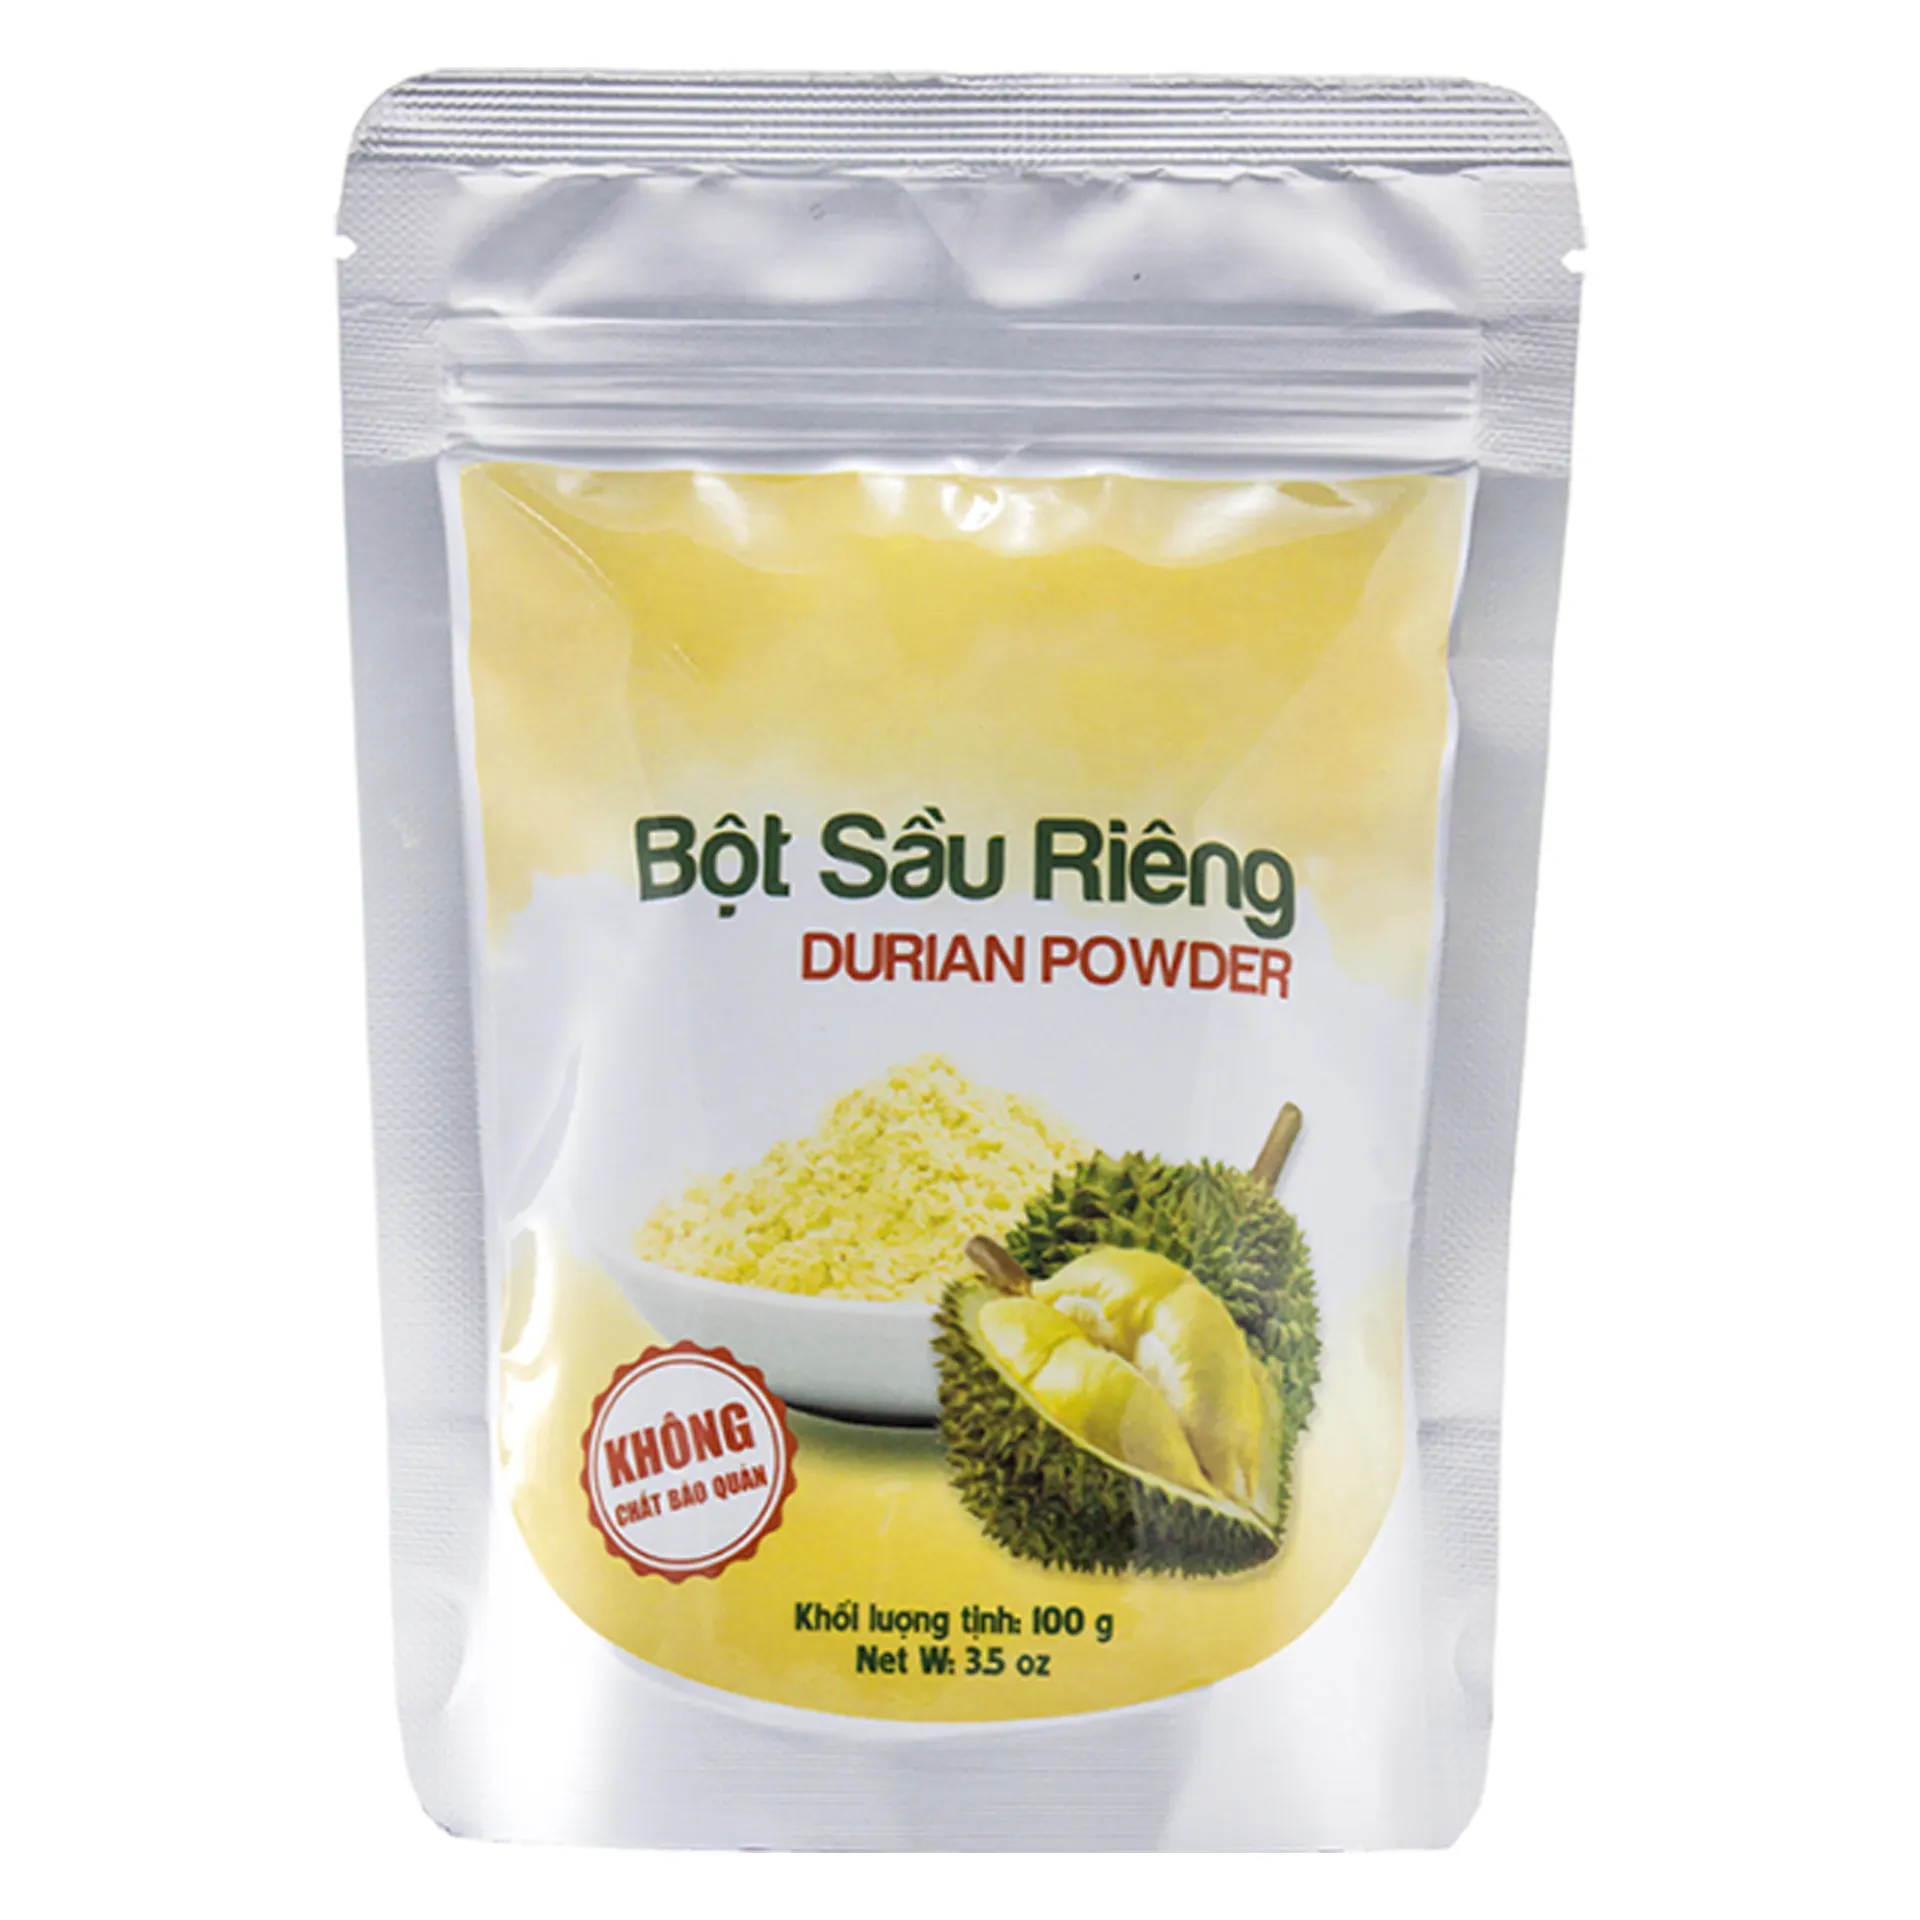 Polvo de Durian para buena comida y bebida, producto fabricado en fábrica de Vietnam, de alta calidad, venta al por mayor, UE, EE. UU.